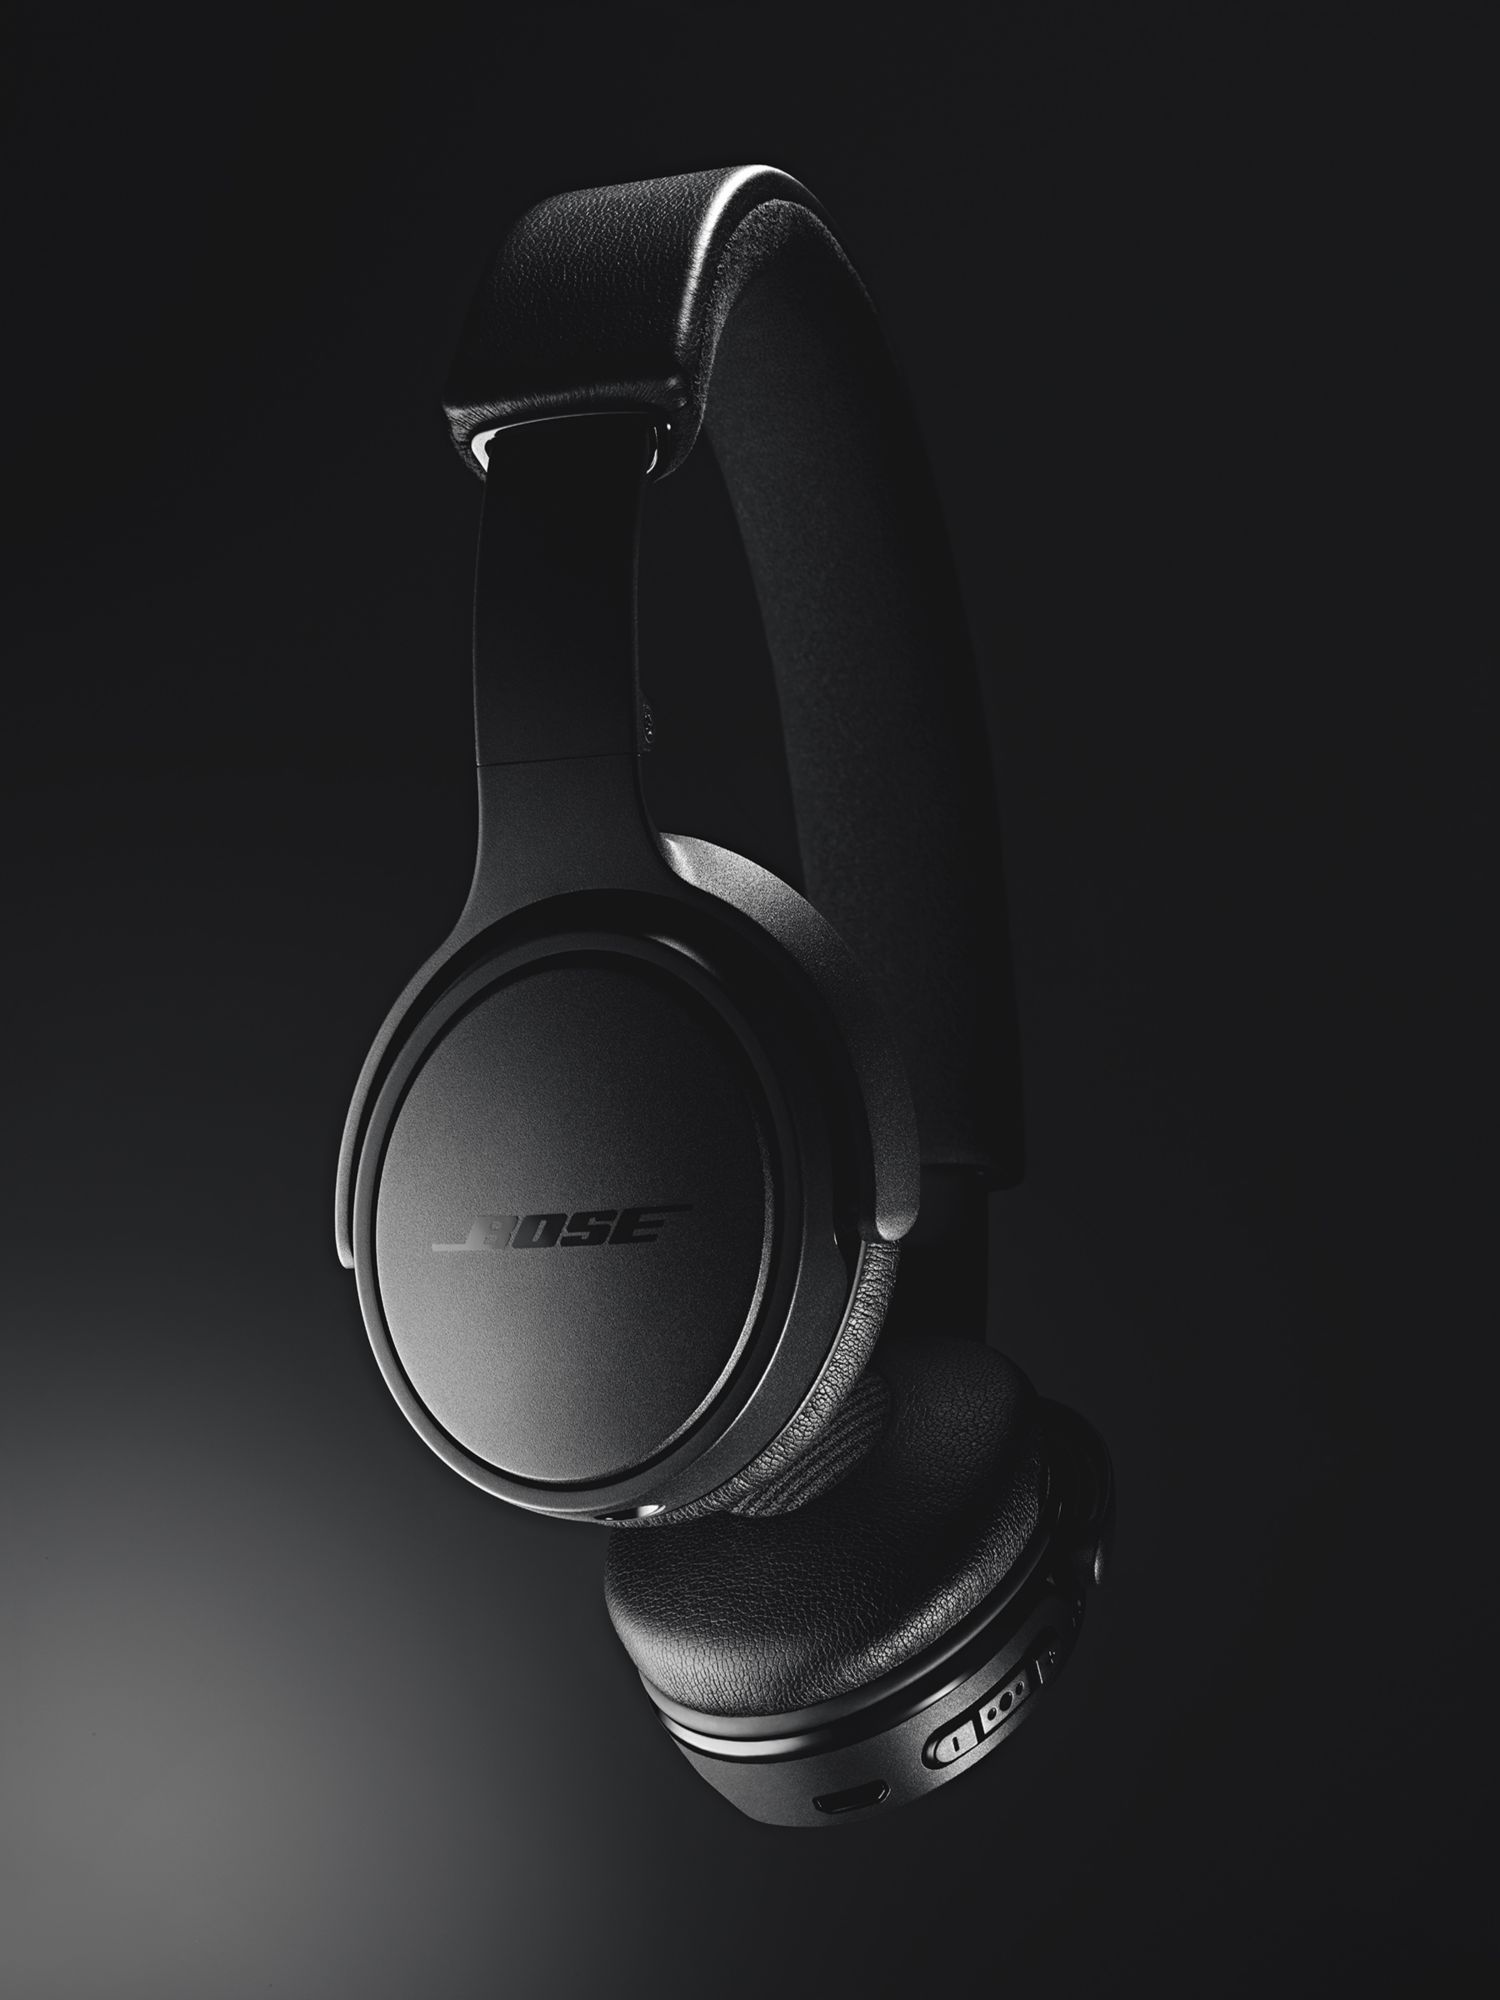 Bose 714675-0030 On Ear Wireless Headphones - Black for sale online